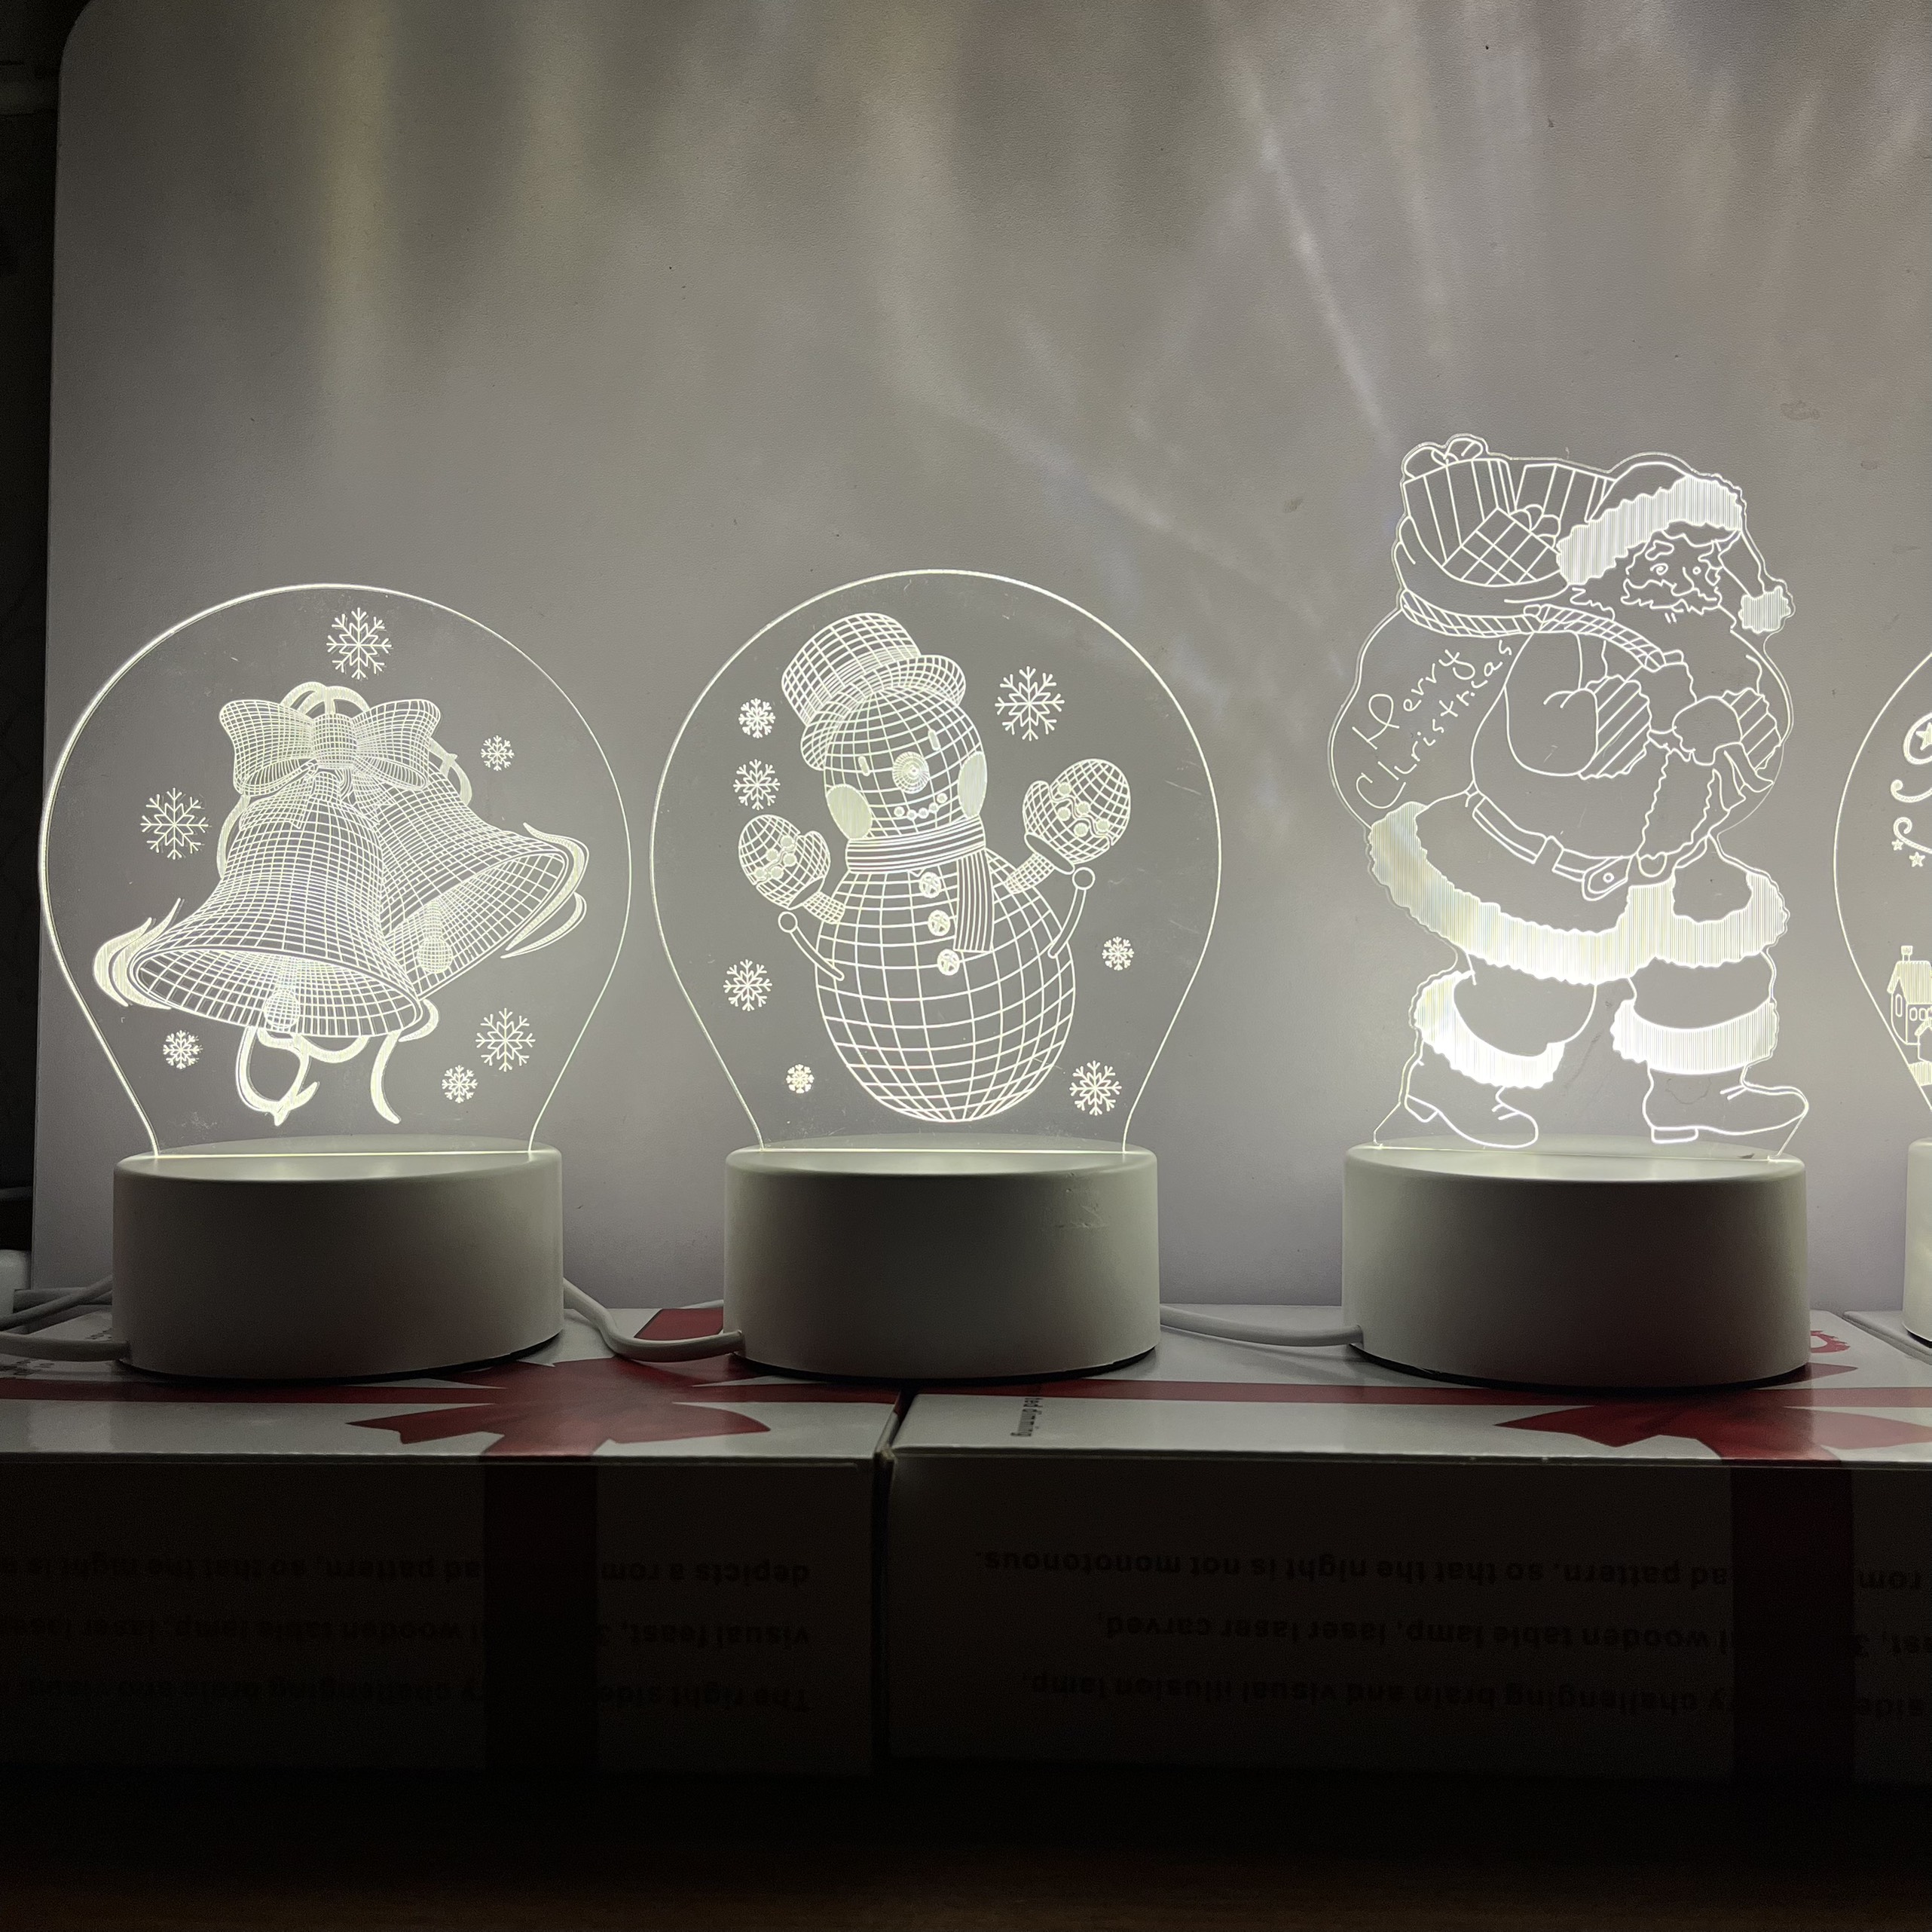 Đèn ngủ để bàn trang trí noel giáng sinh đẹp rẻ hình 3D - quà tặng bạn công ty vô cùng ý nghĩa